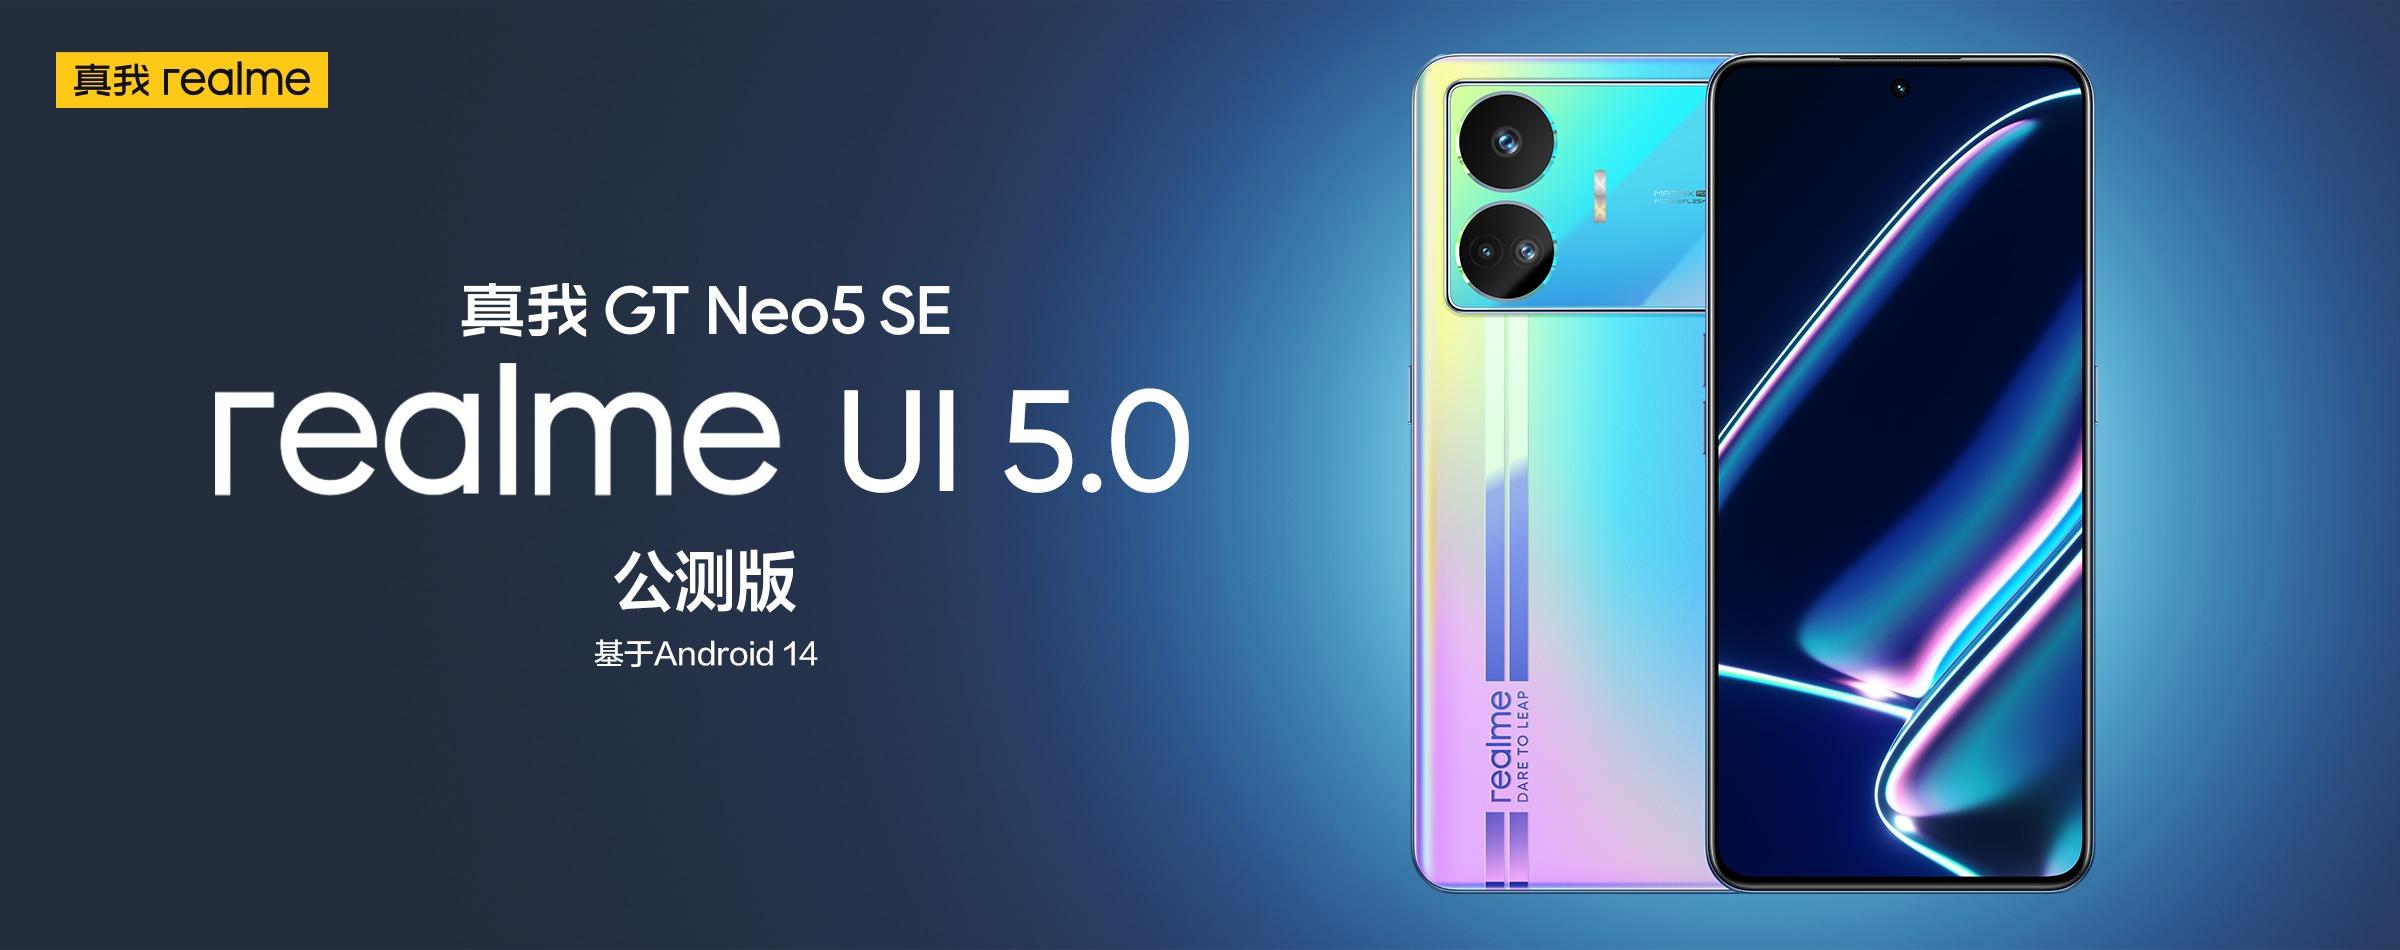 Realme GT Neo 5 SE har modtaget en betaversion af Realme UI 5.0 baseret på Android 14.